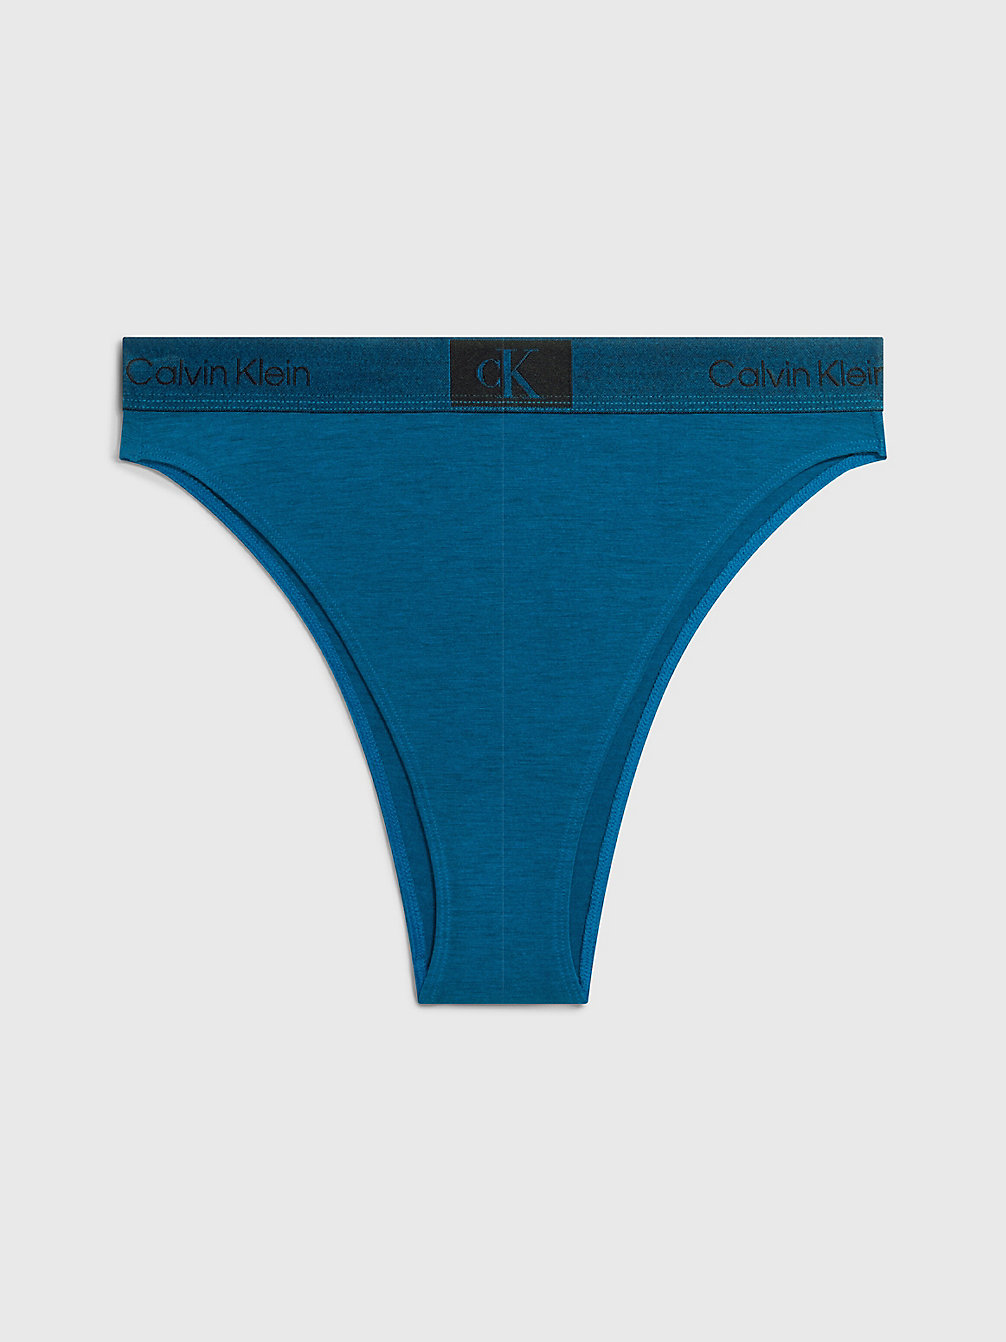 AMPLIFIED BLUE High Waisted Brazilian Briefs - Ck96 undefined women Calvin Klein